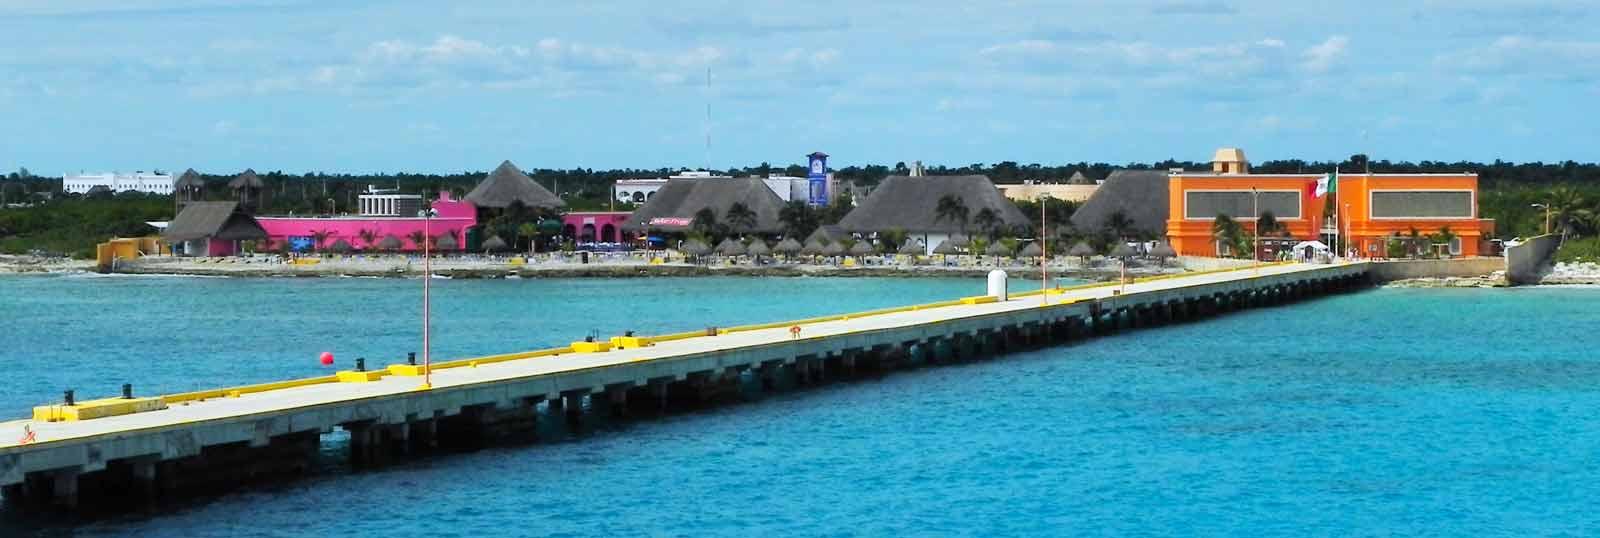 costa maya cruise port tripadvisor